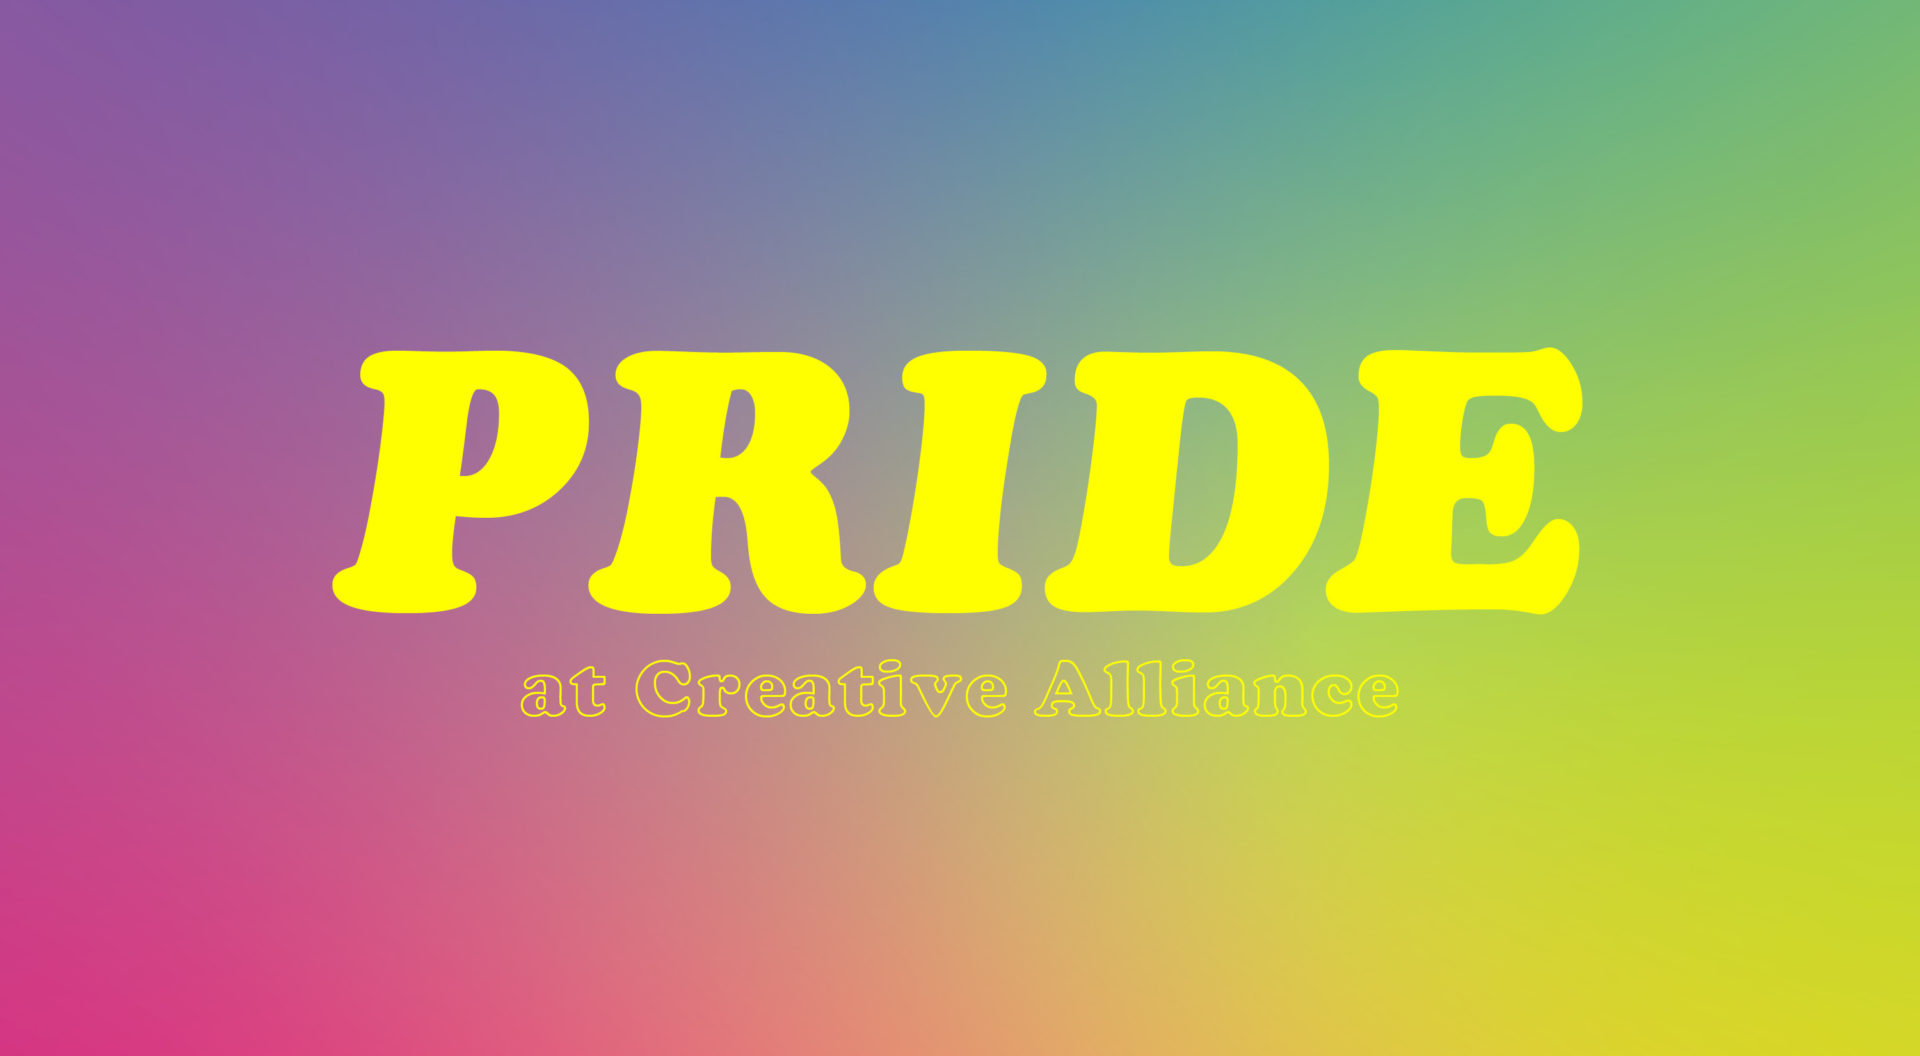 Creative Alliance | Baltimore pride events